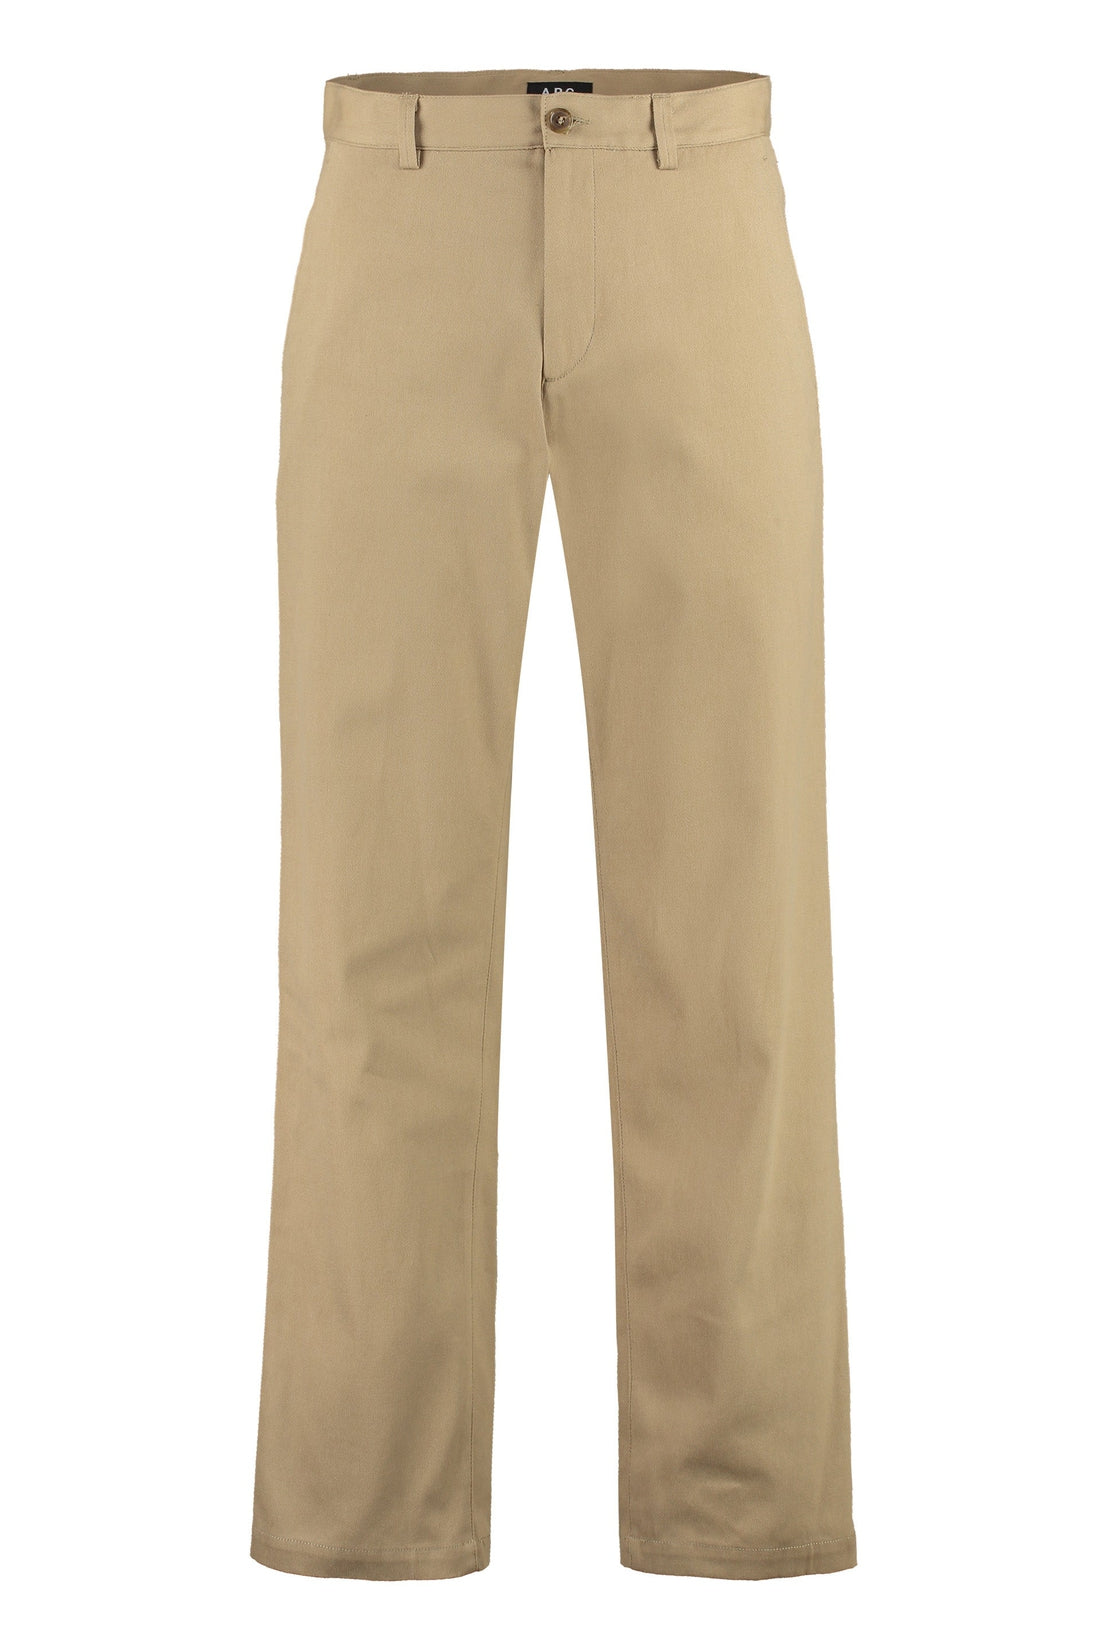 A.P.C.-OUTLET-SALE-Cotton trousers-ARCHIVIST